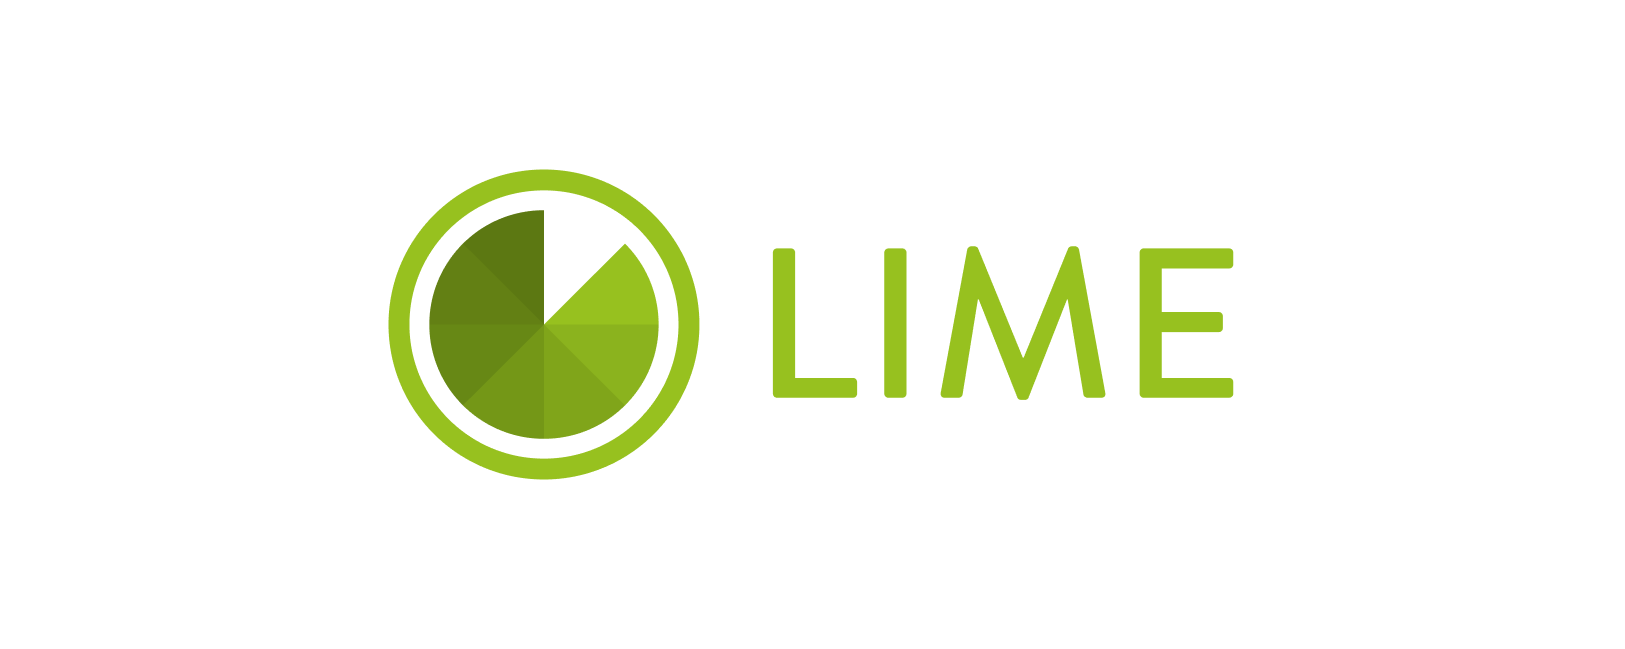 Ооо мфк лайм. ООО МФК "лайм-займ". Lime займ логотип. Микрофинансовая компания лайм займ. Лайм займ фото.